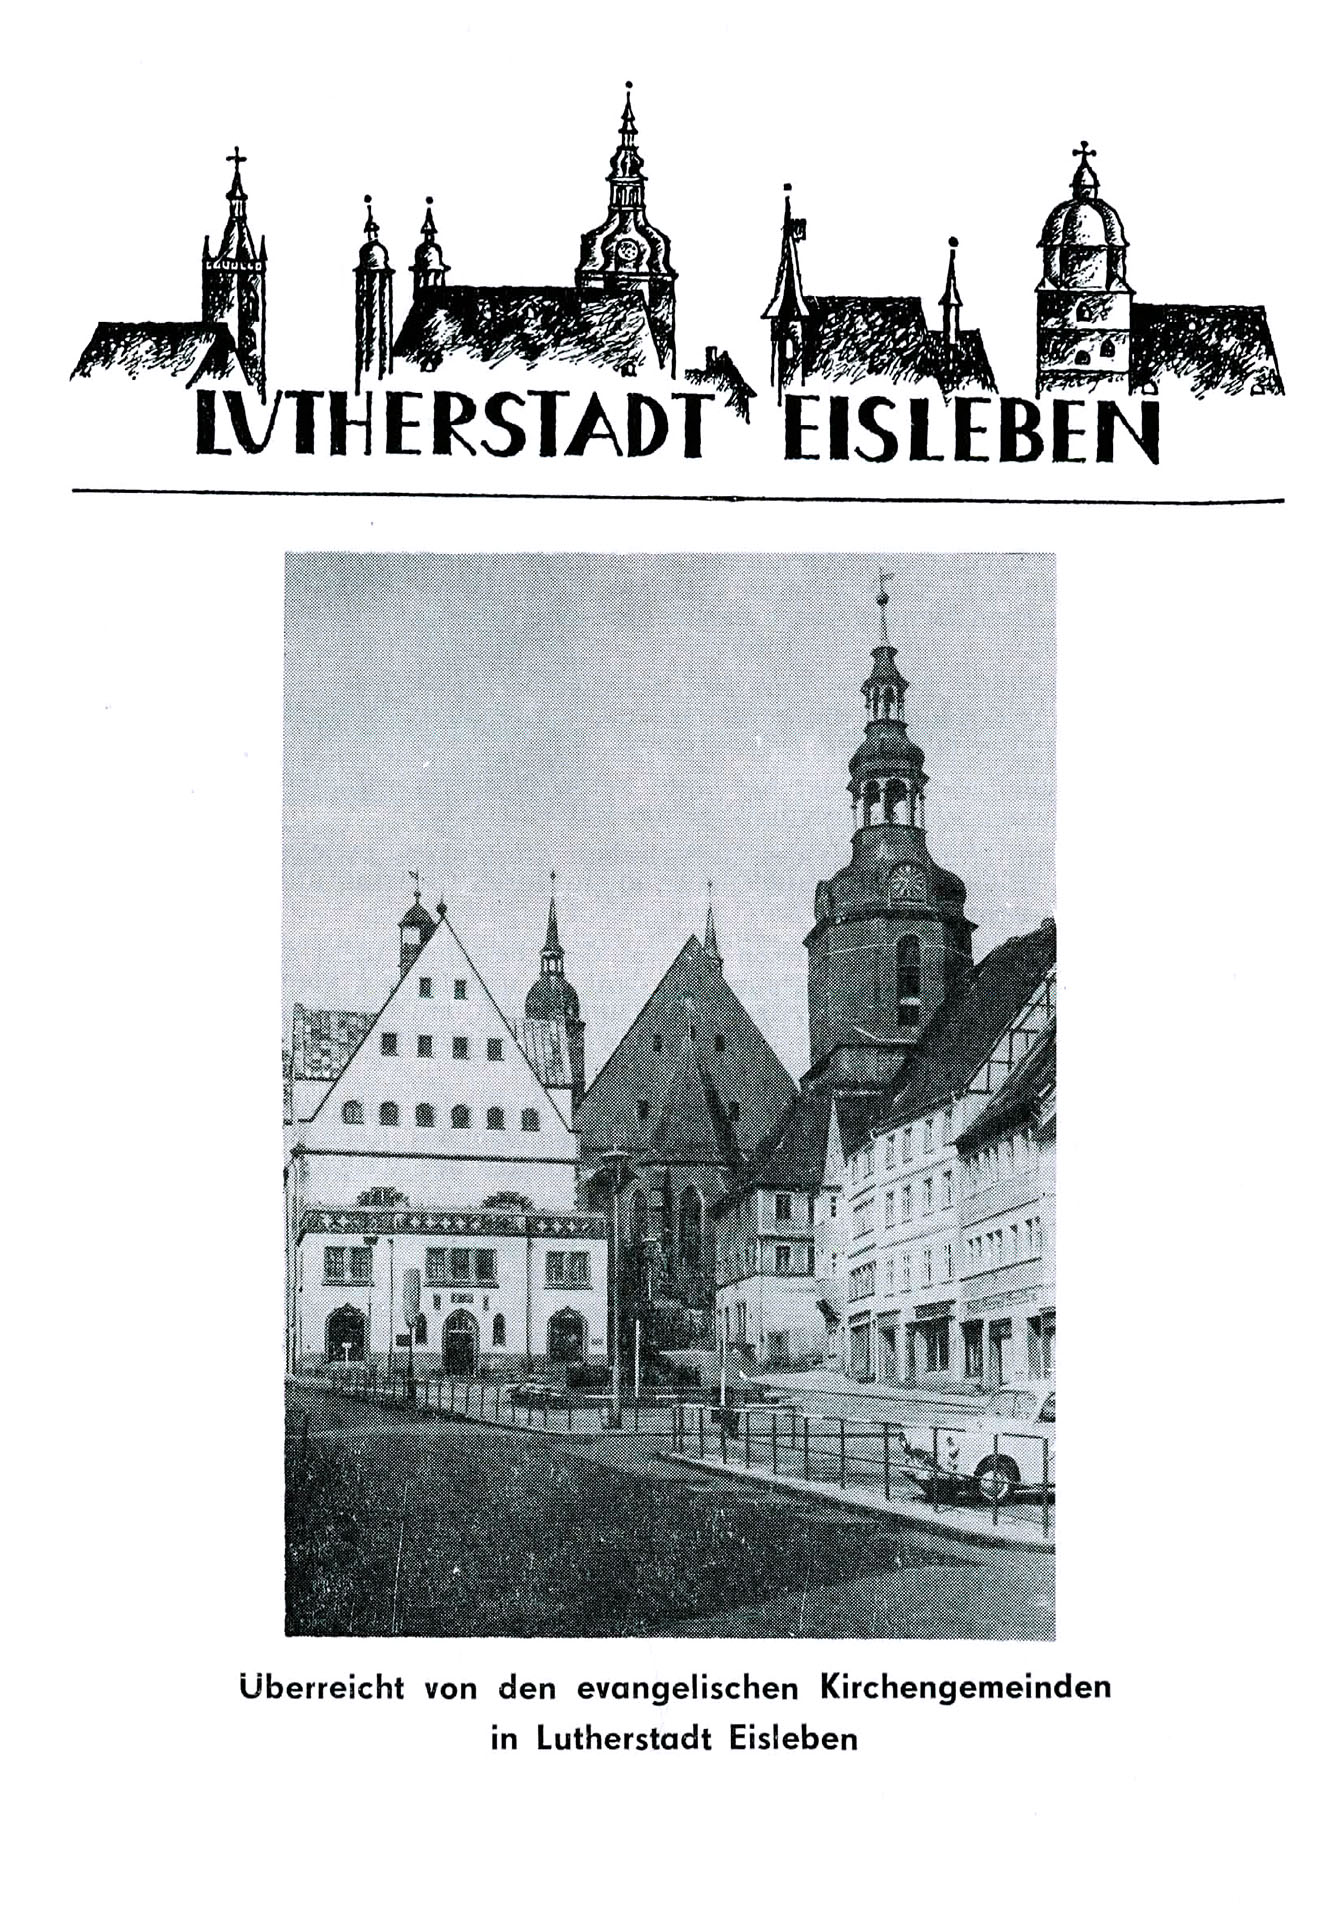 Lutherstadt Eisleben - Evangelische Kirchengemeinden in der Lutherstadt Eisleben